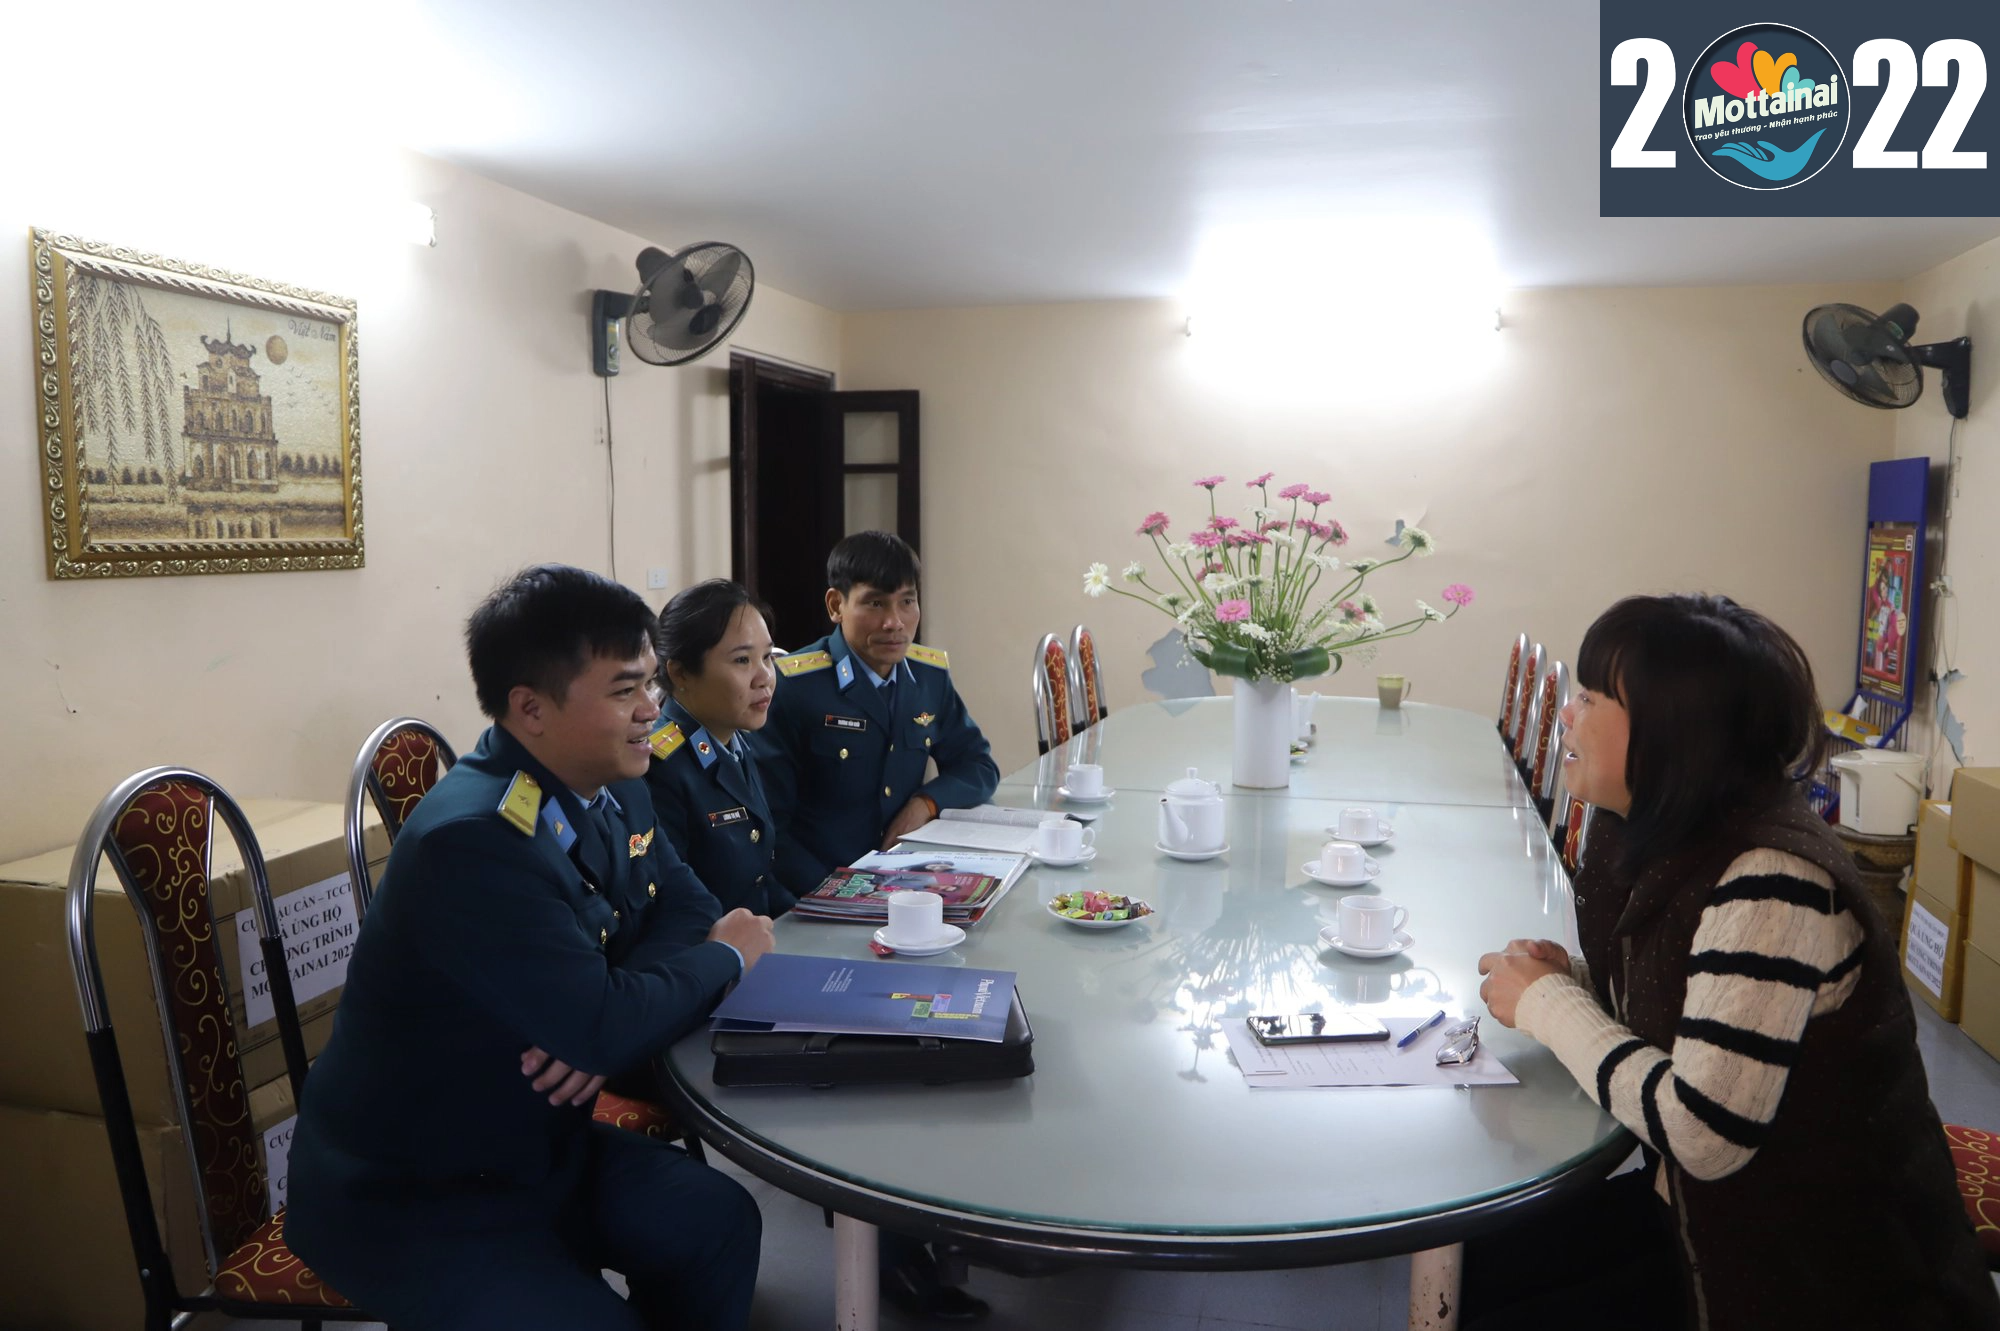 Trường Cao Đẳng Kỹ thuật Phòng Không – Không Quân ủng hộ Chương trình Mottainai 2022 - Ảnh 2.